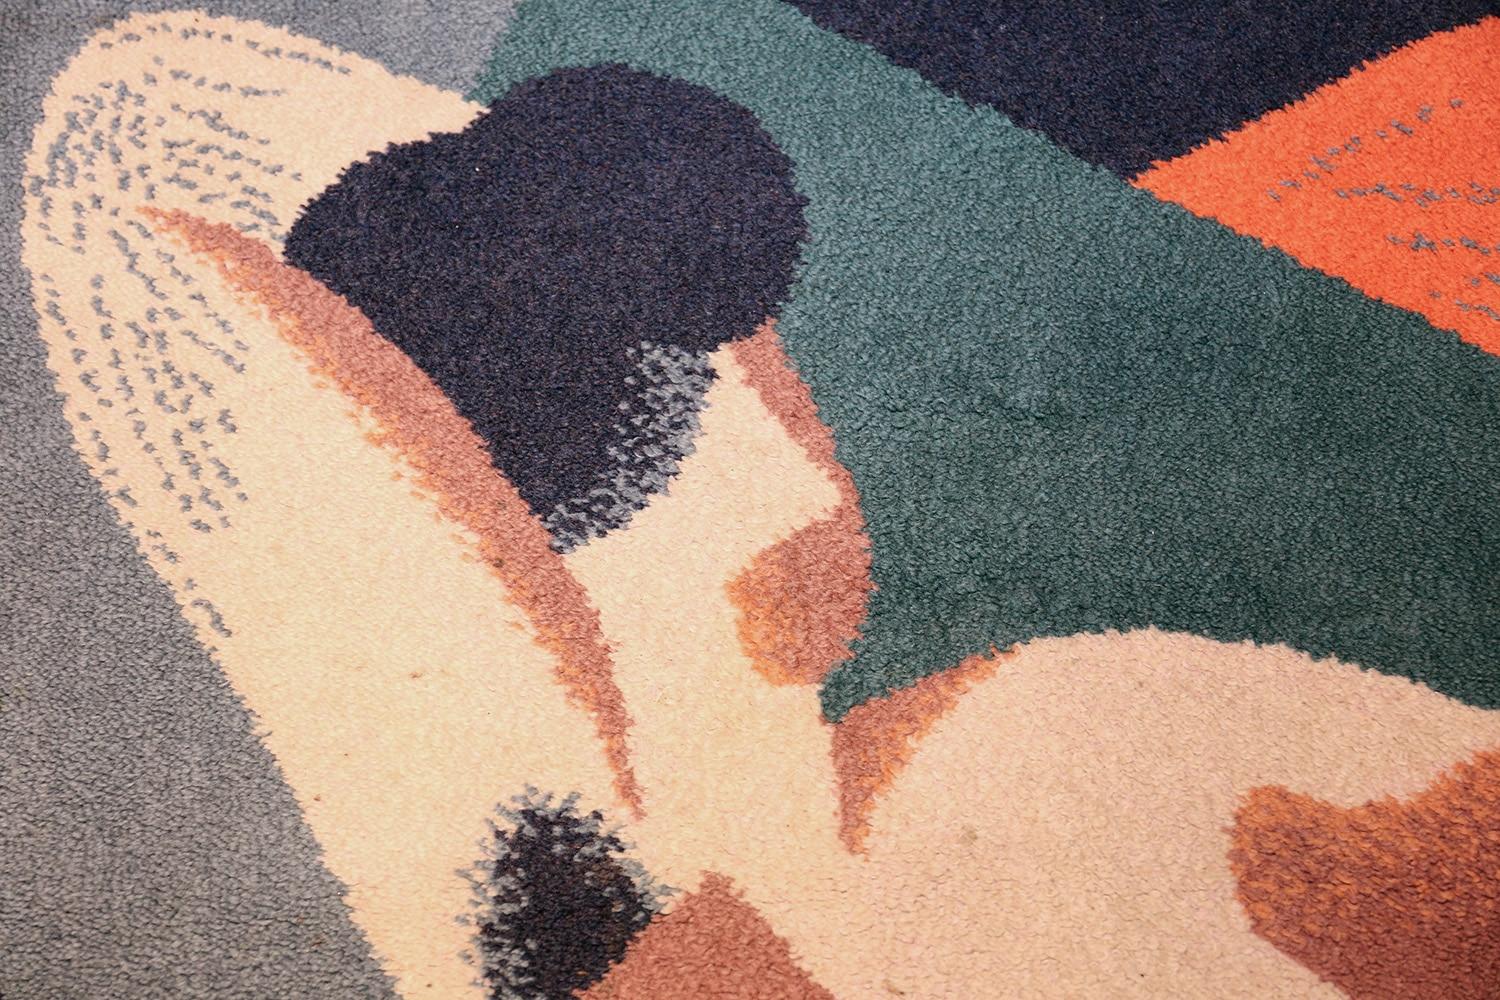 Vintage Scandinavian Swedish rug, Herkunftsland: Schweden, Entstehungszeit: Mitte 20. Jahrhundert. Größe: 1,4 m x 2,01 m (4 ft 7 in x 6 ft 7 in)

